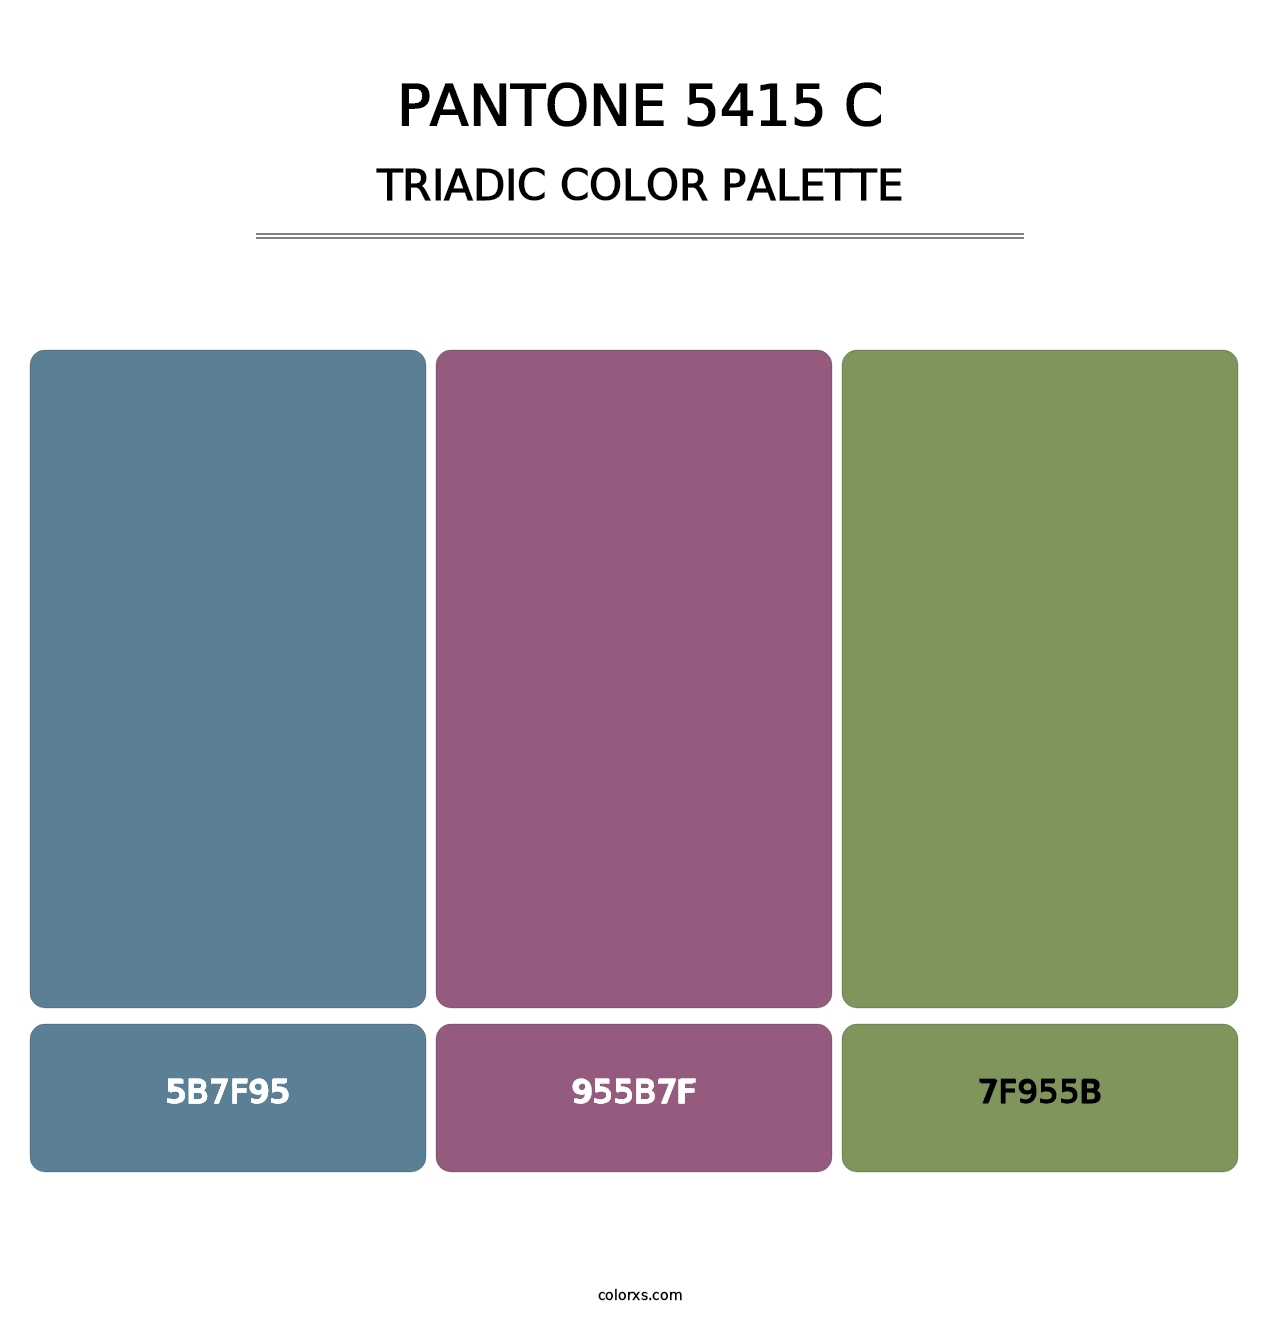 PANTONE 5415 C - Triadic Color Palette